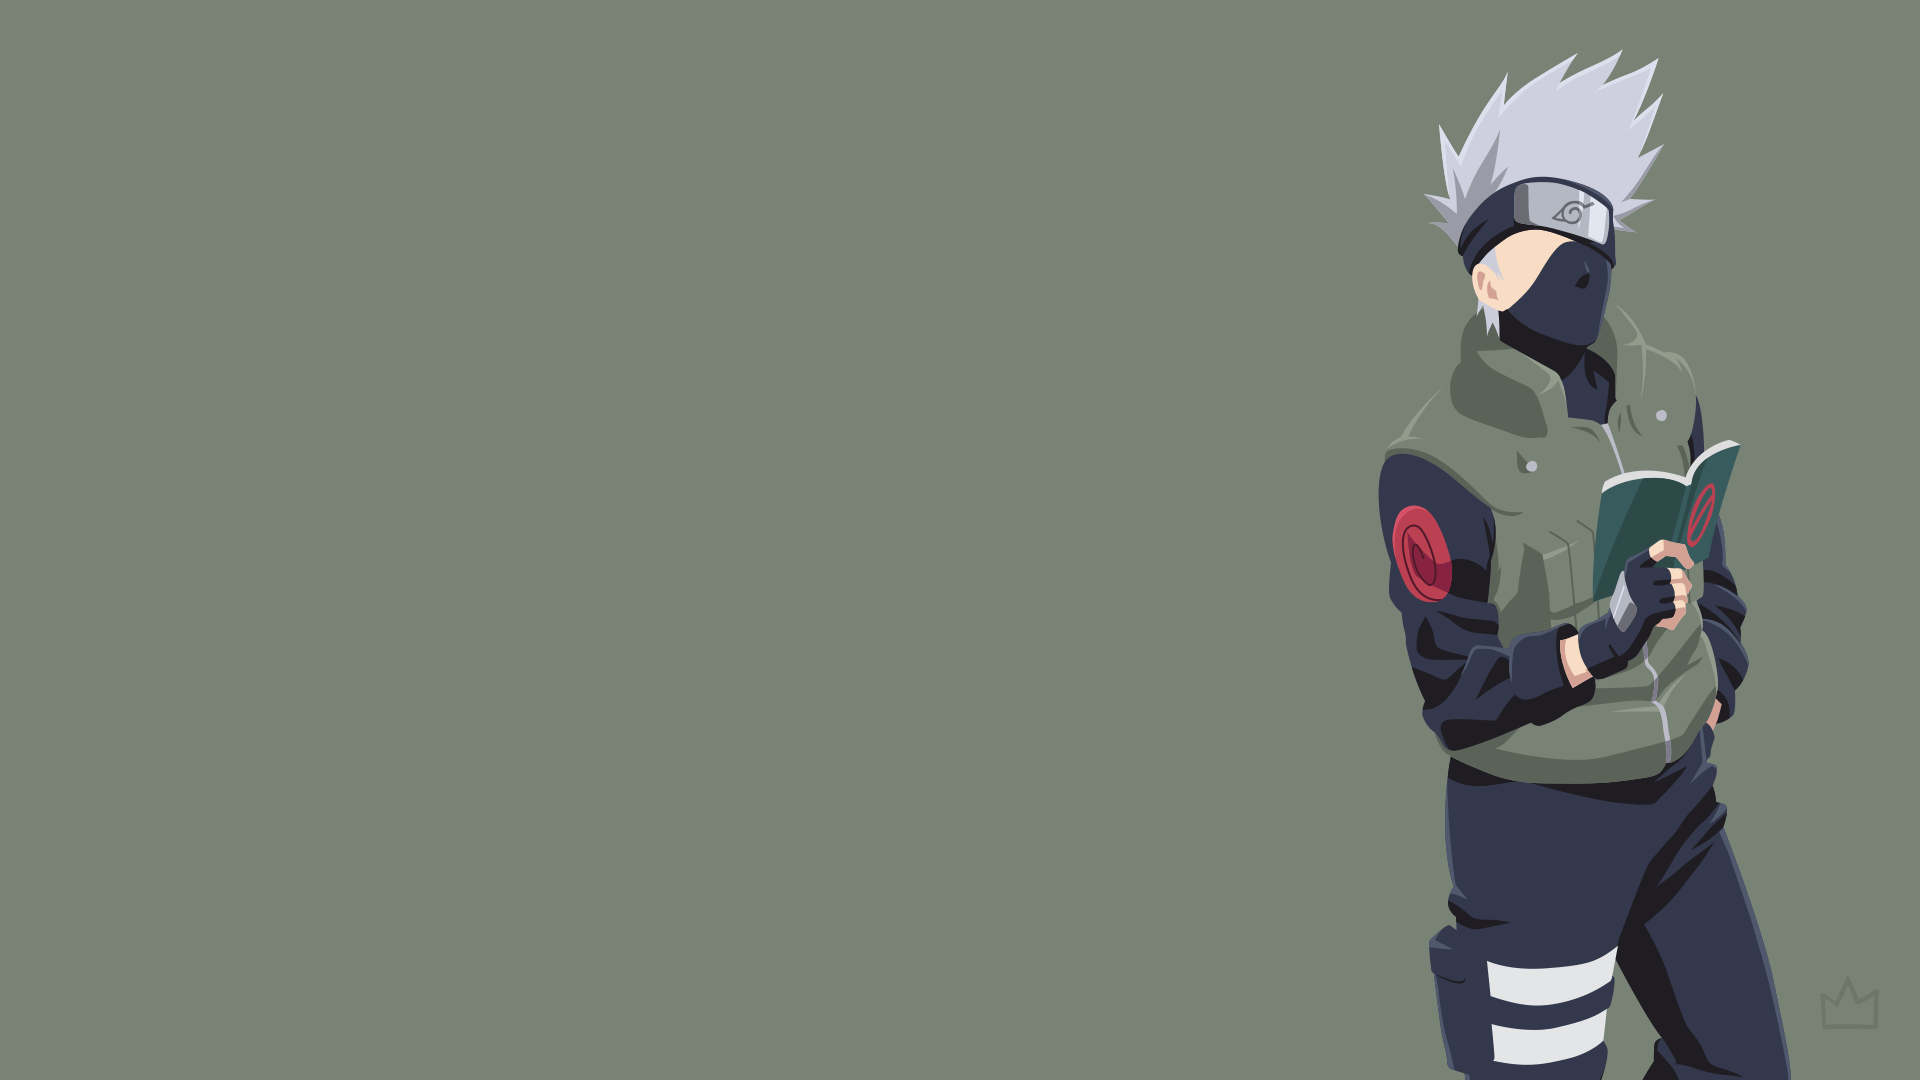 Hatake Kakashi (Naruto)